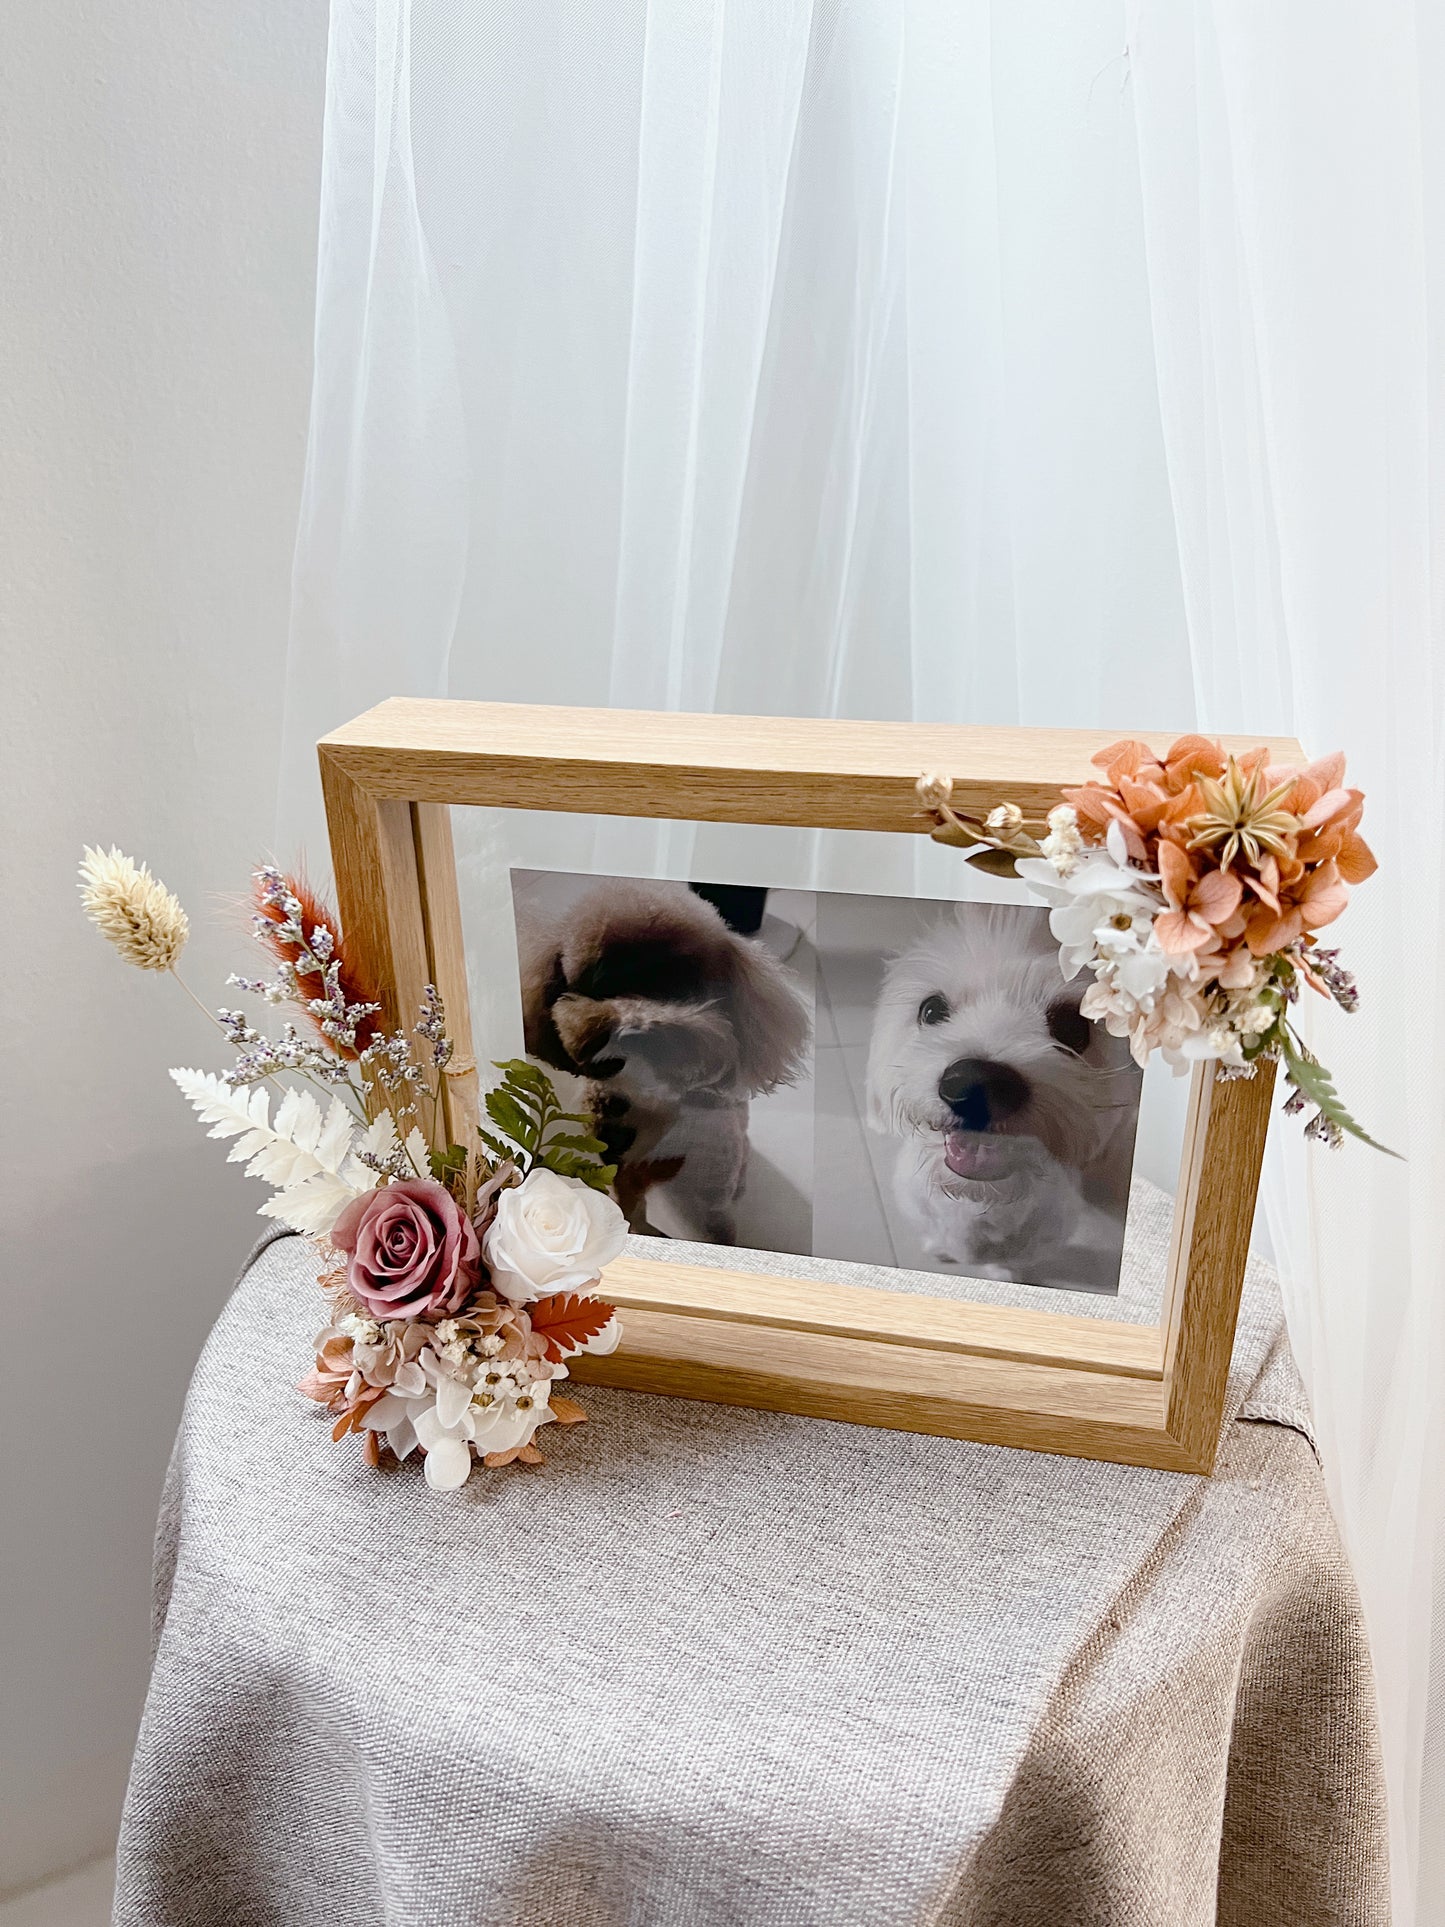 Floral Photo Frame - Let us design for you!